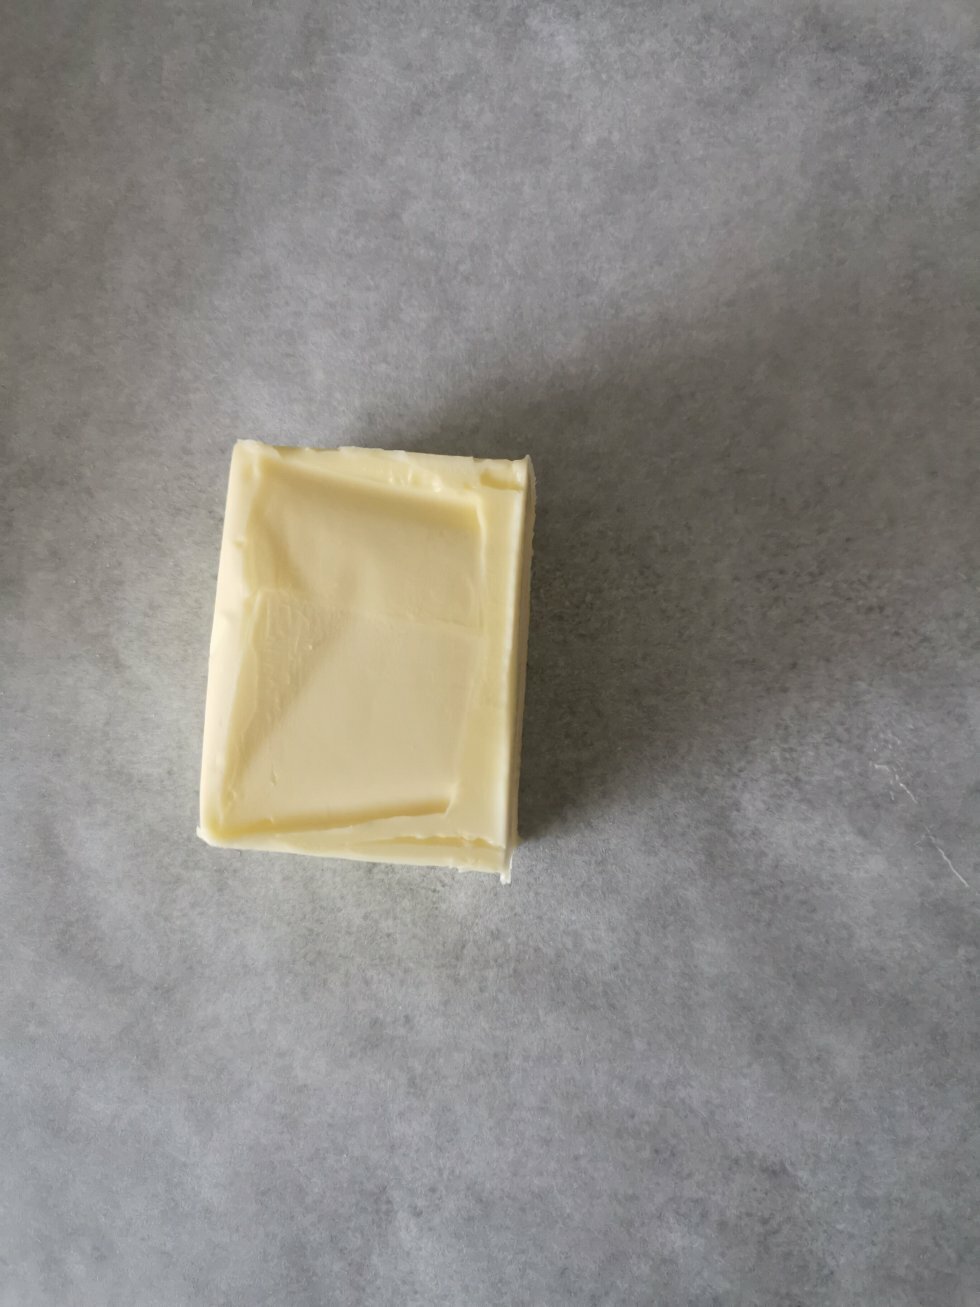 Køleskabskoldt smør lægges mellem bagepapir. - Tebirkes/københavnerbirkes